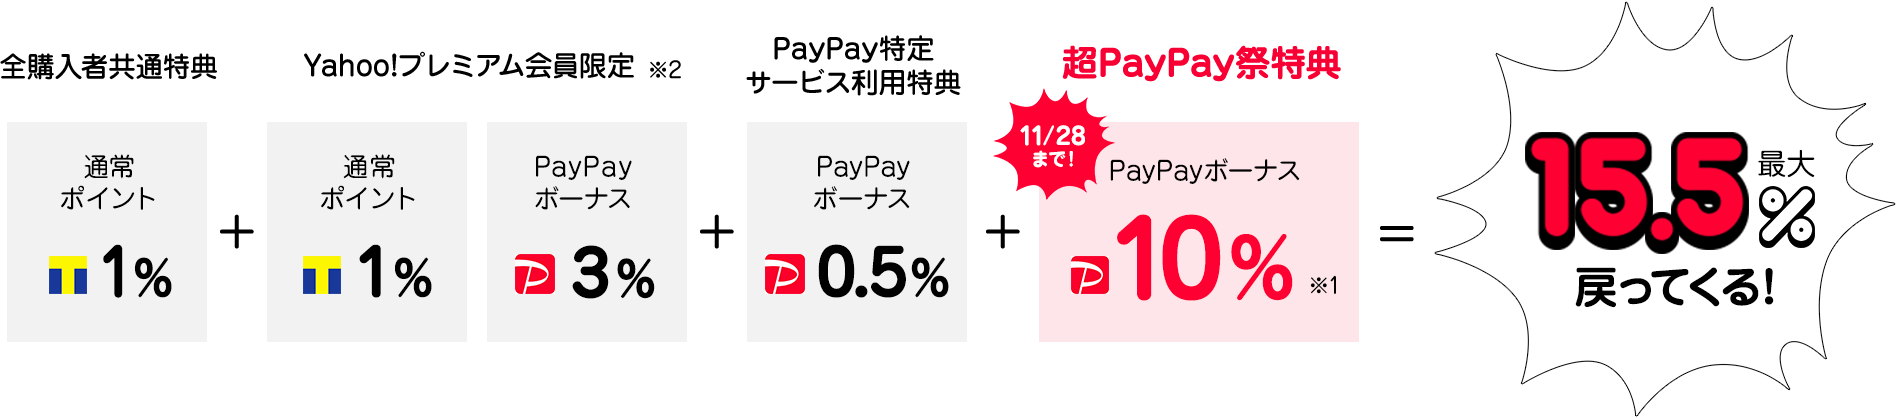 PayPay残高でのレンタルで最大16%相当戻ってくる